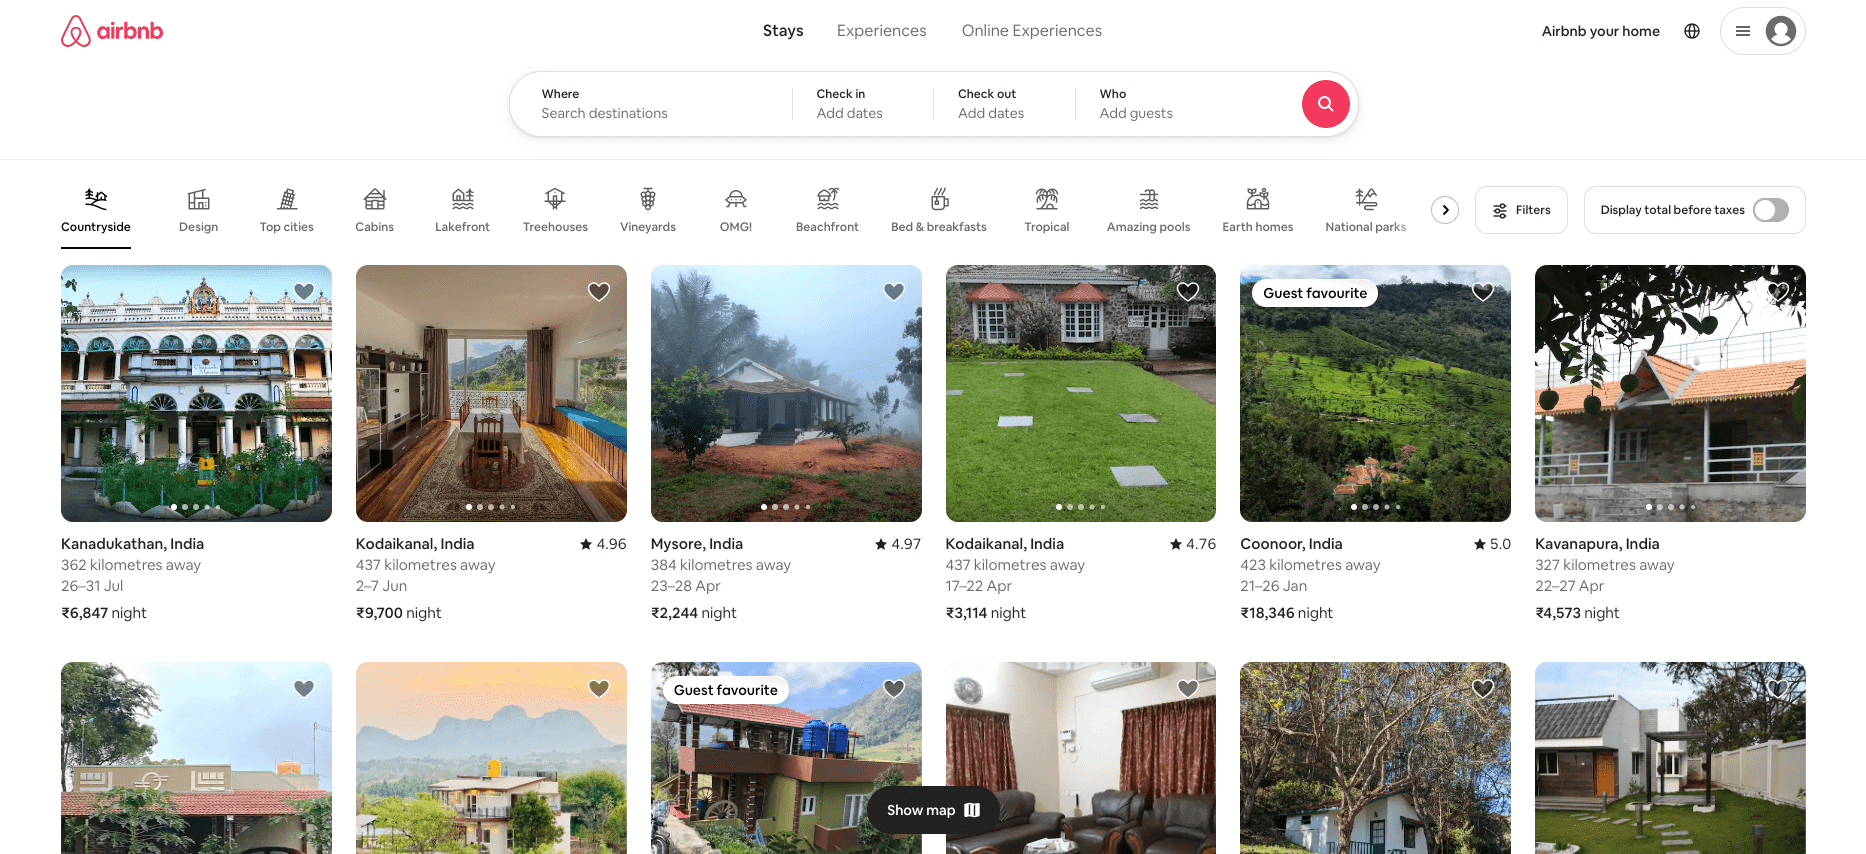 airbnb-min